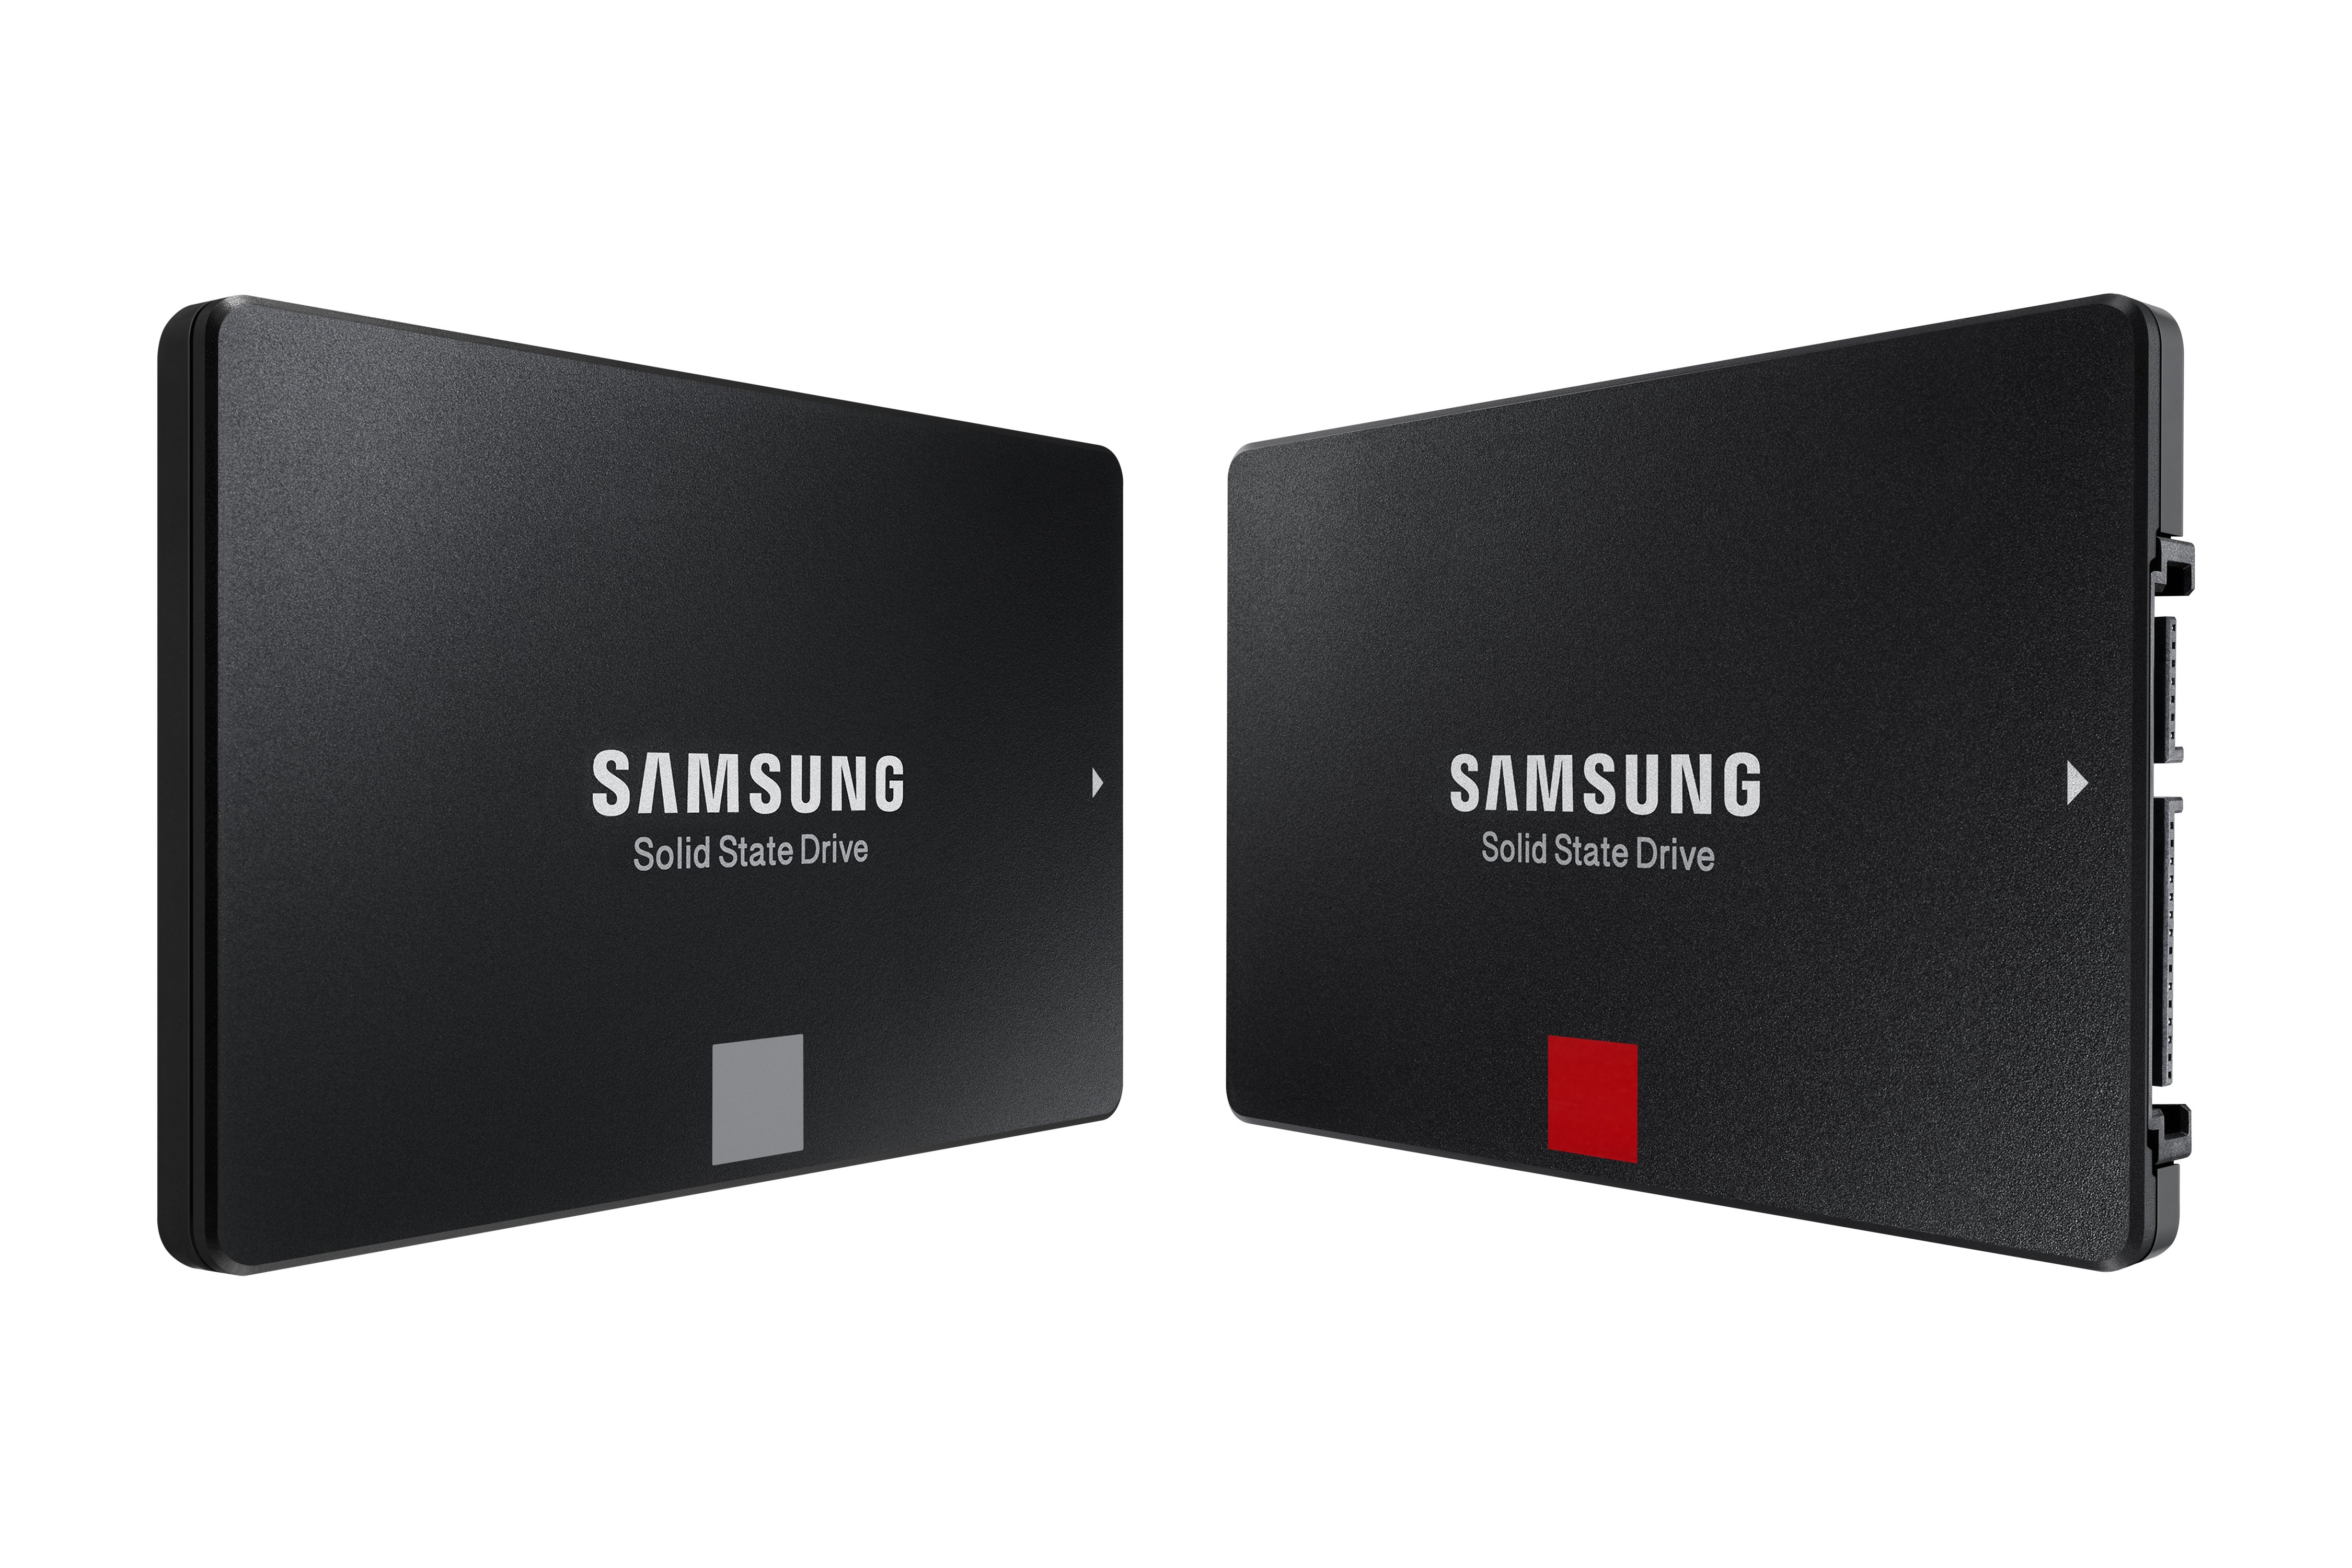 Immagine pubblicata in relazione al seguente contenuto: Samsung lancia ufficialmente le linee di drive SSD 860 Pro e 860 EVO | Nome immagine: news27753_Samsung-860-Pro-860-EVO_1.jpg